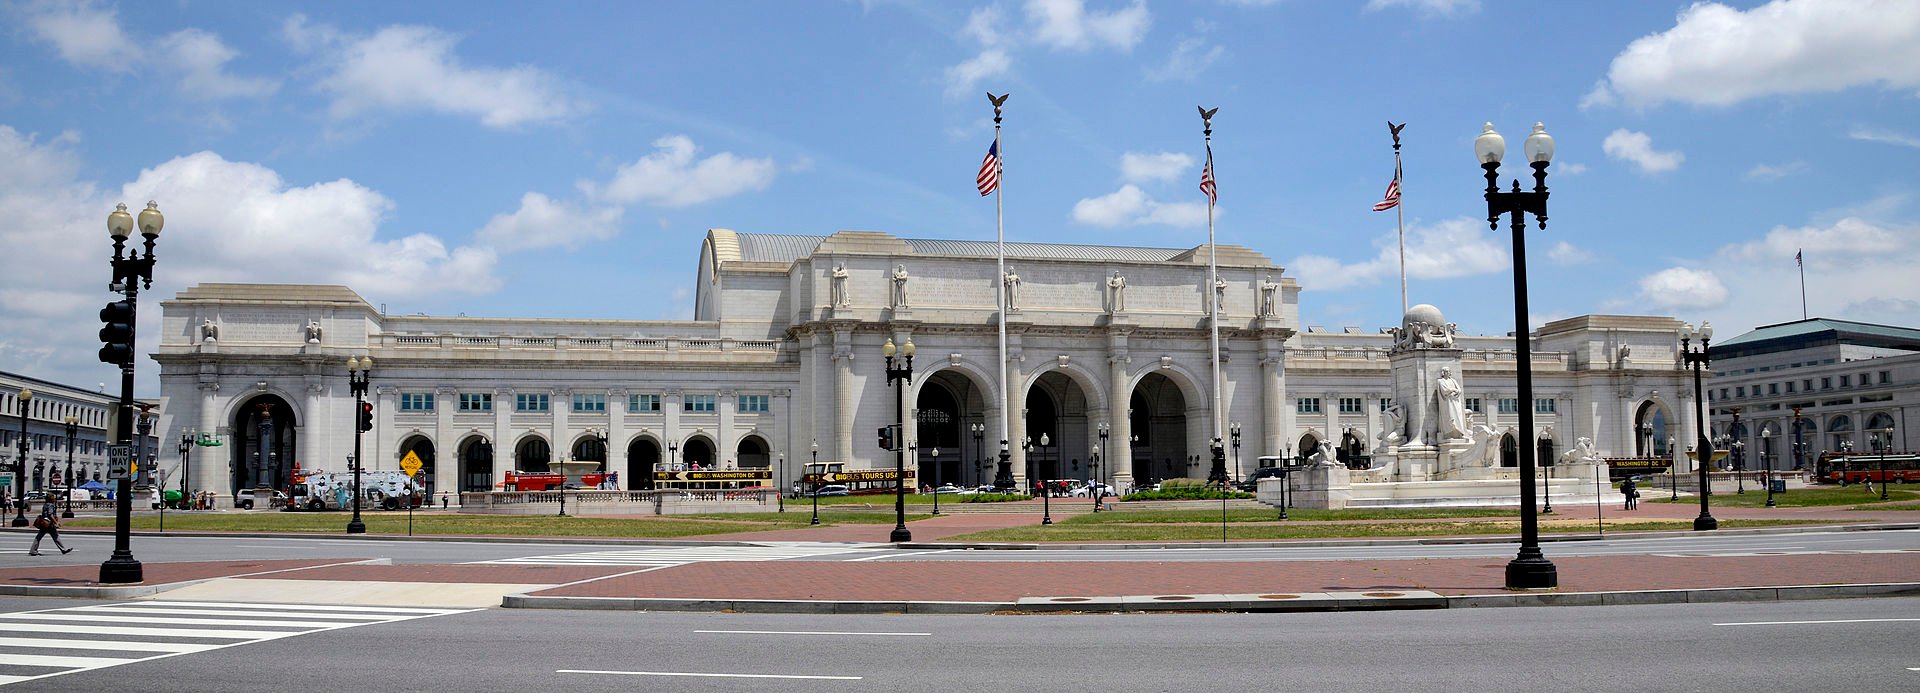 Ουάσινγκτον – Εκκενώνεται o Union Station – Απειλές για βόμβα – ΤΩΡΑ